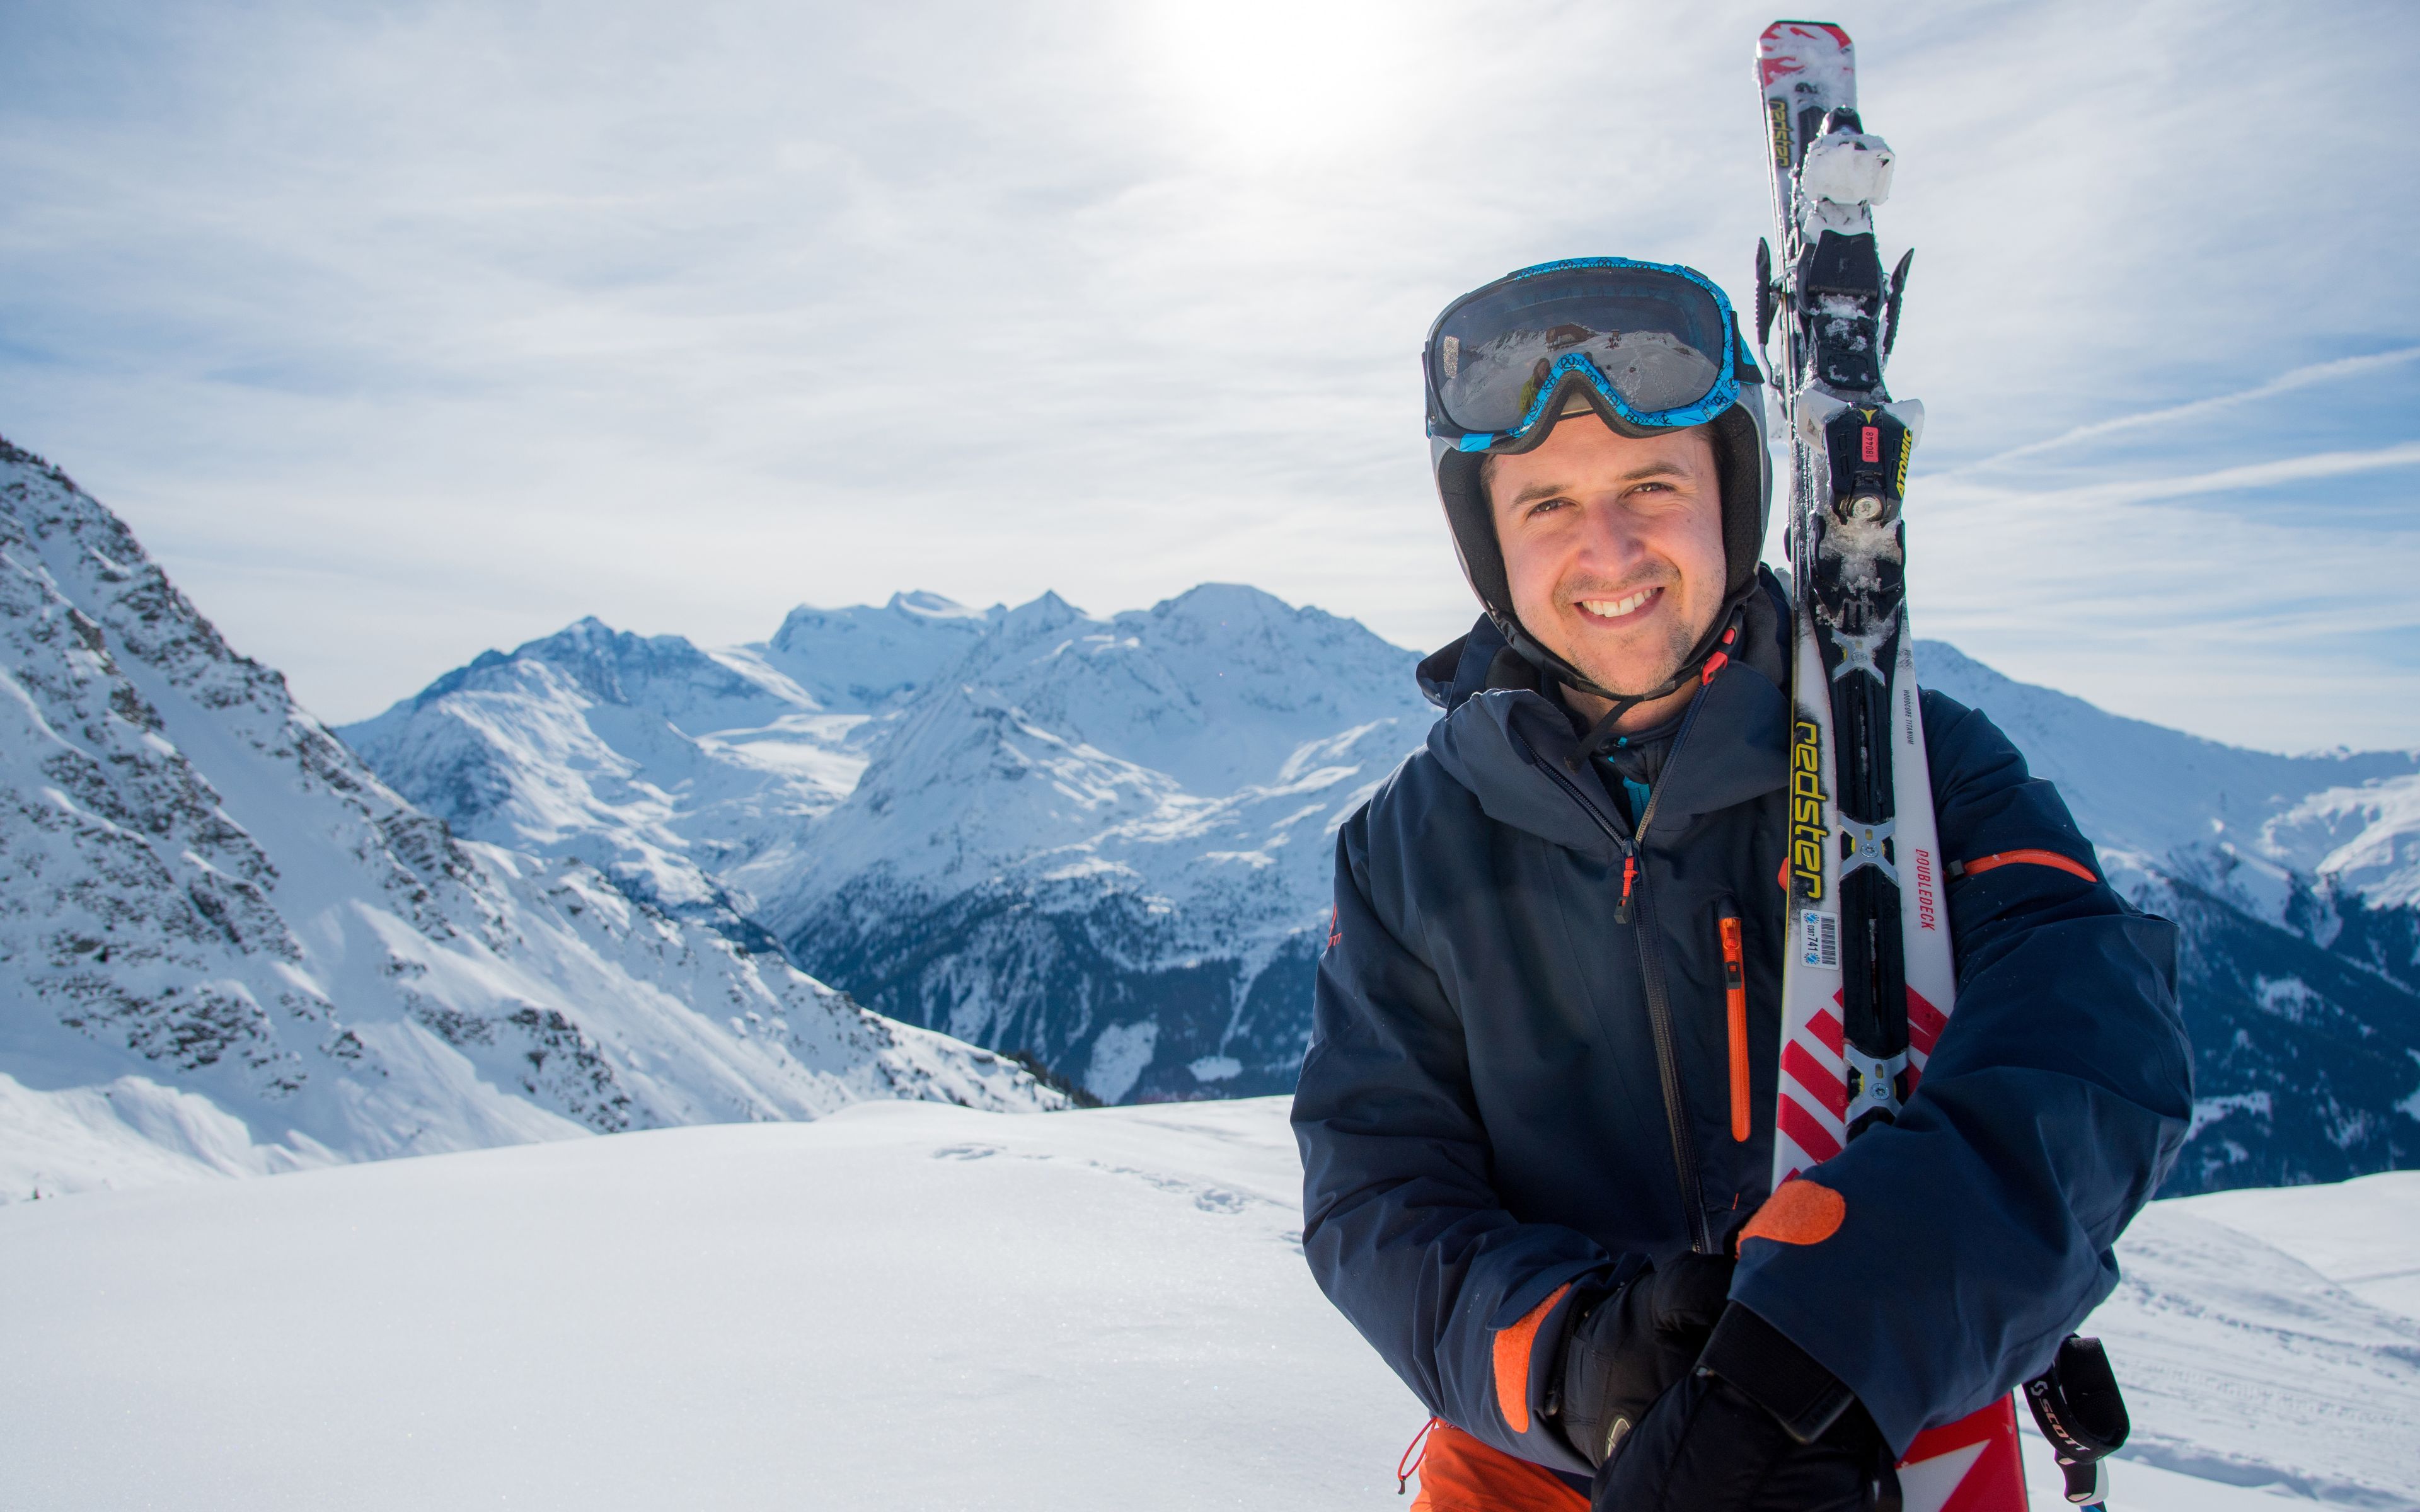 Tom Lüthi skiing in Verbier, Valais